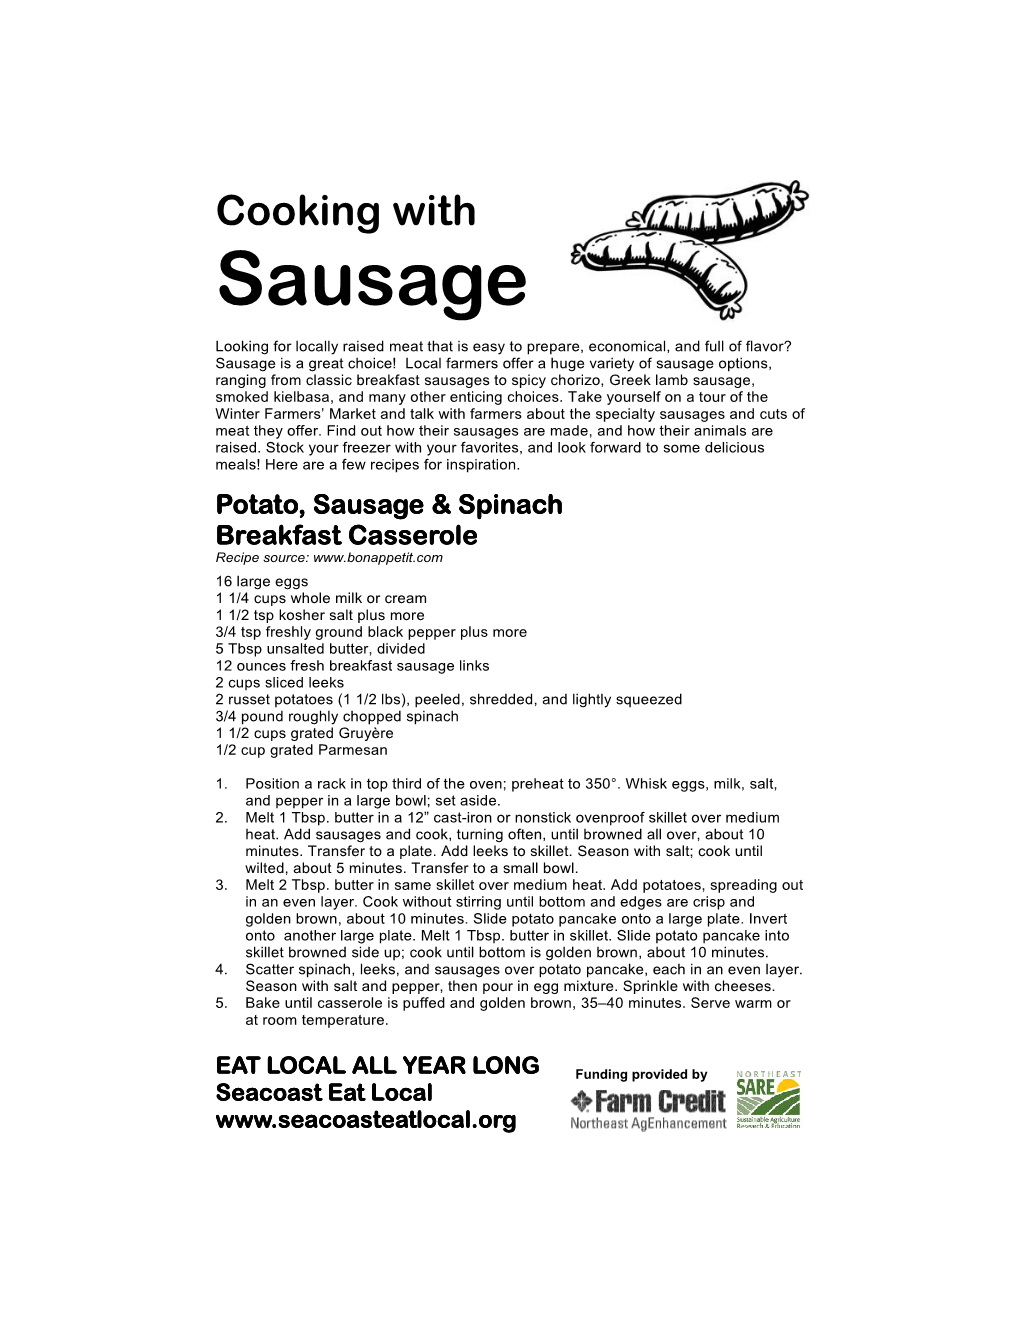 Sausage Recipe Card